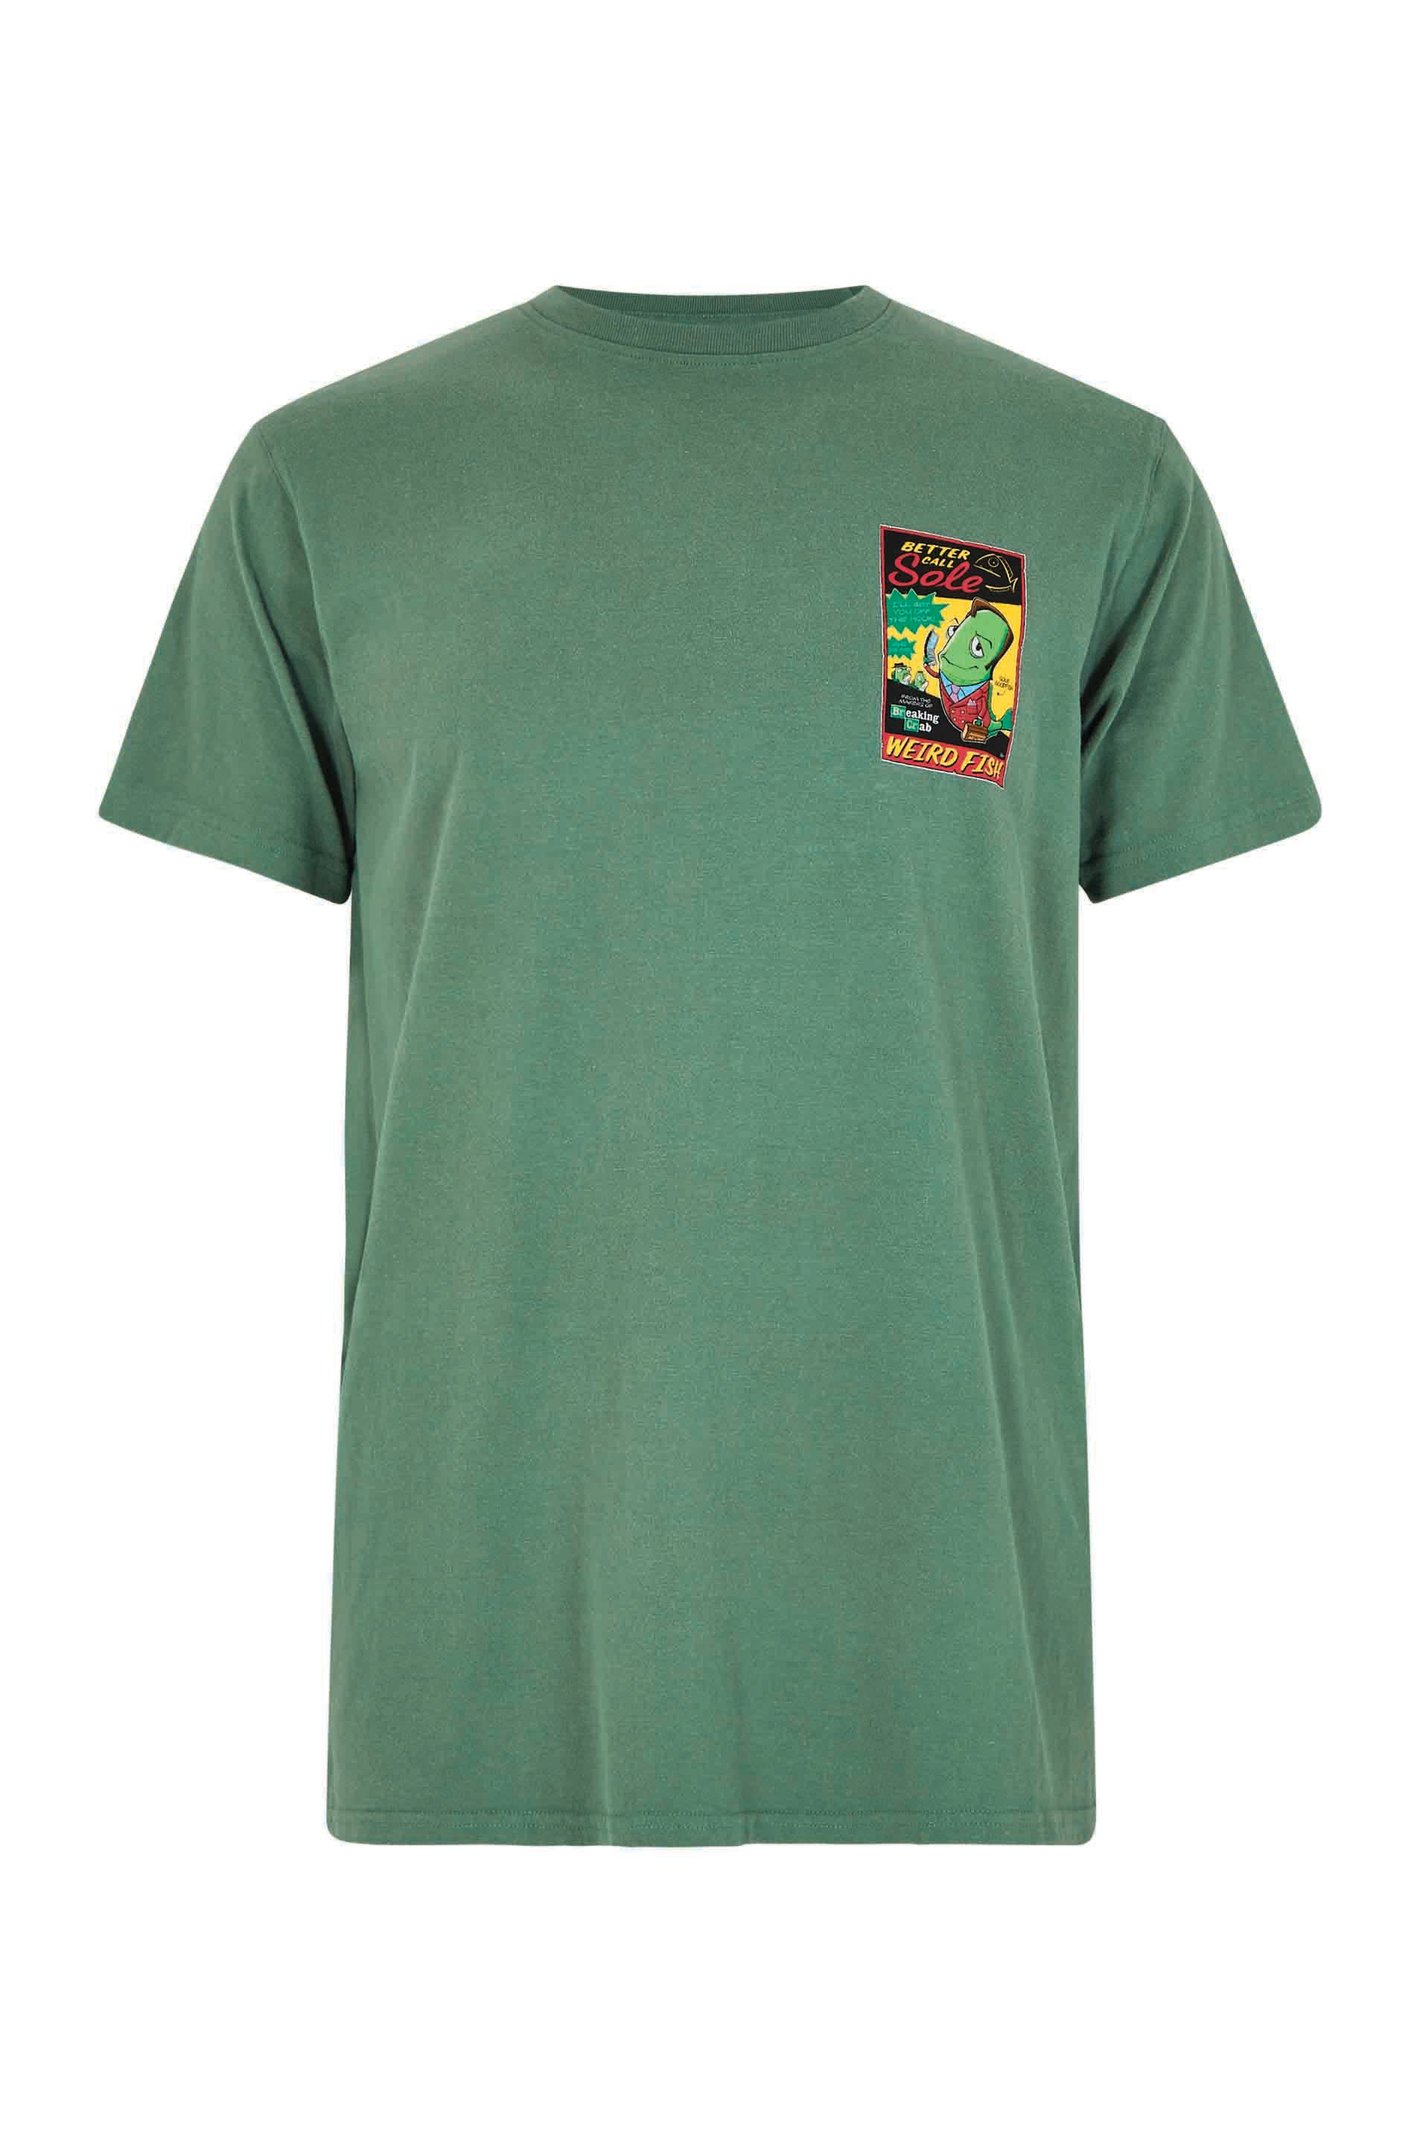 Weird Fish Call Sole Artist T-Shirt Dusky Green Size XL